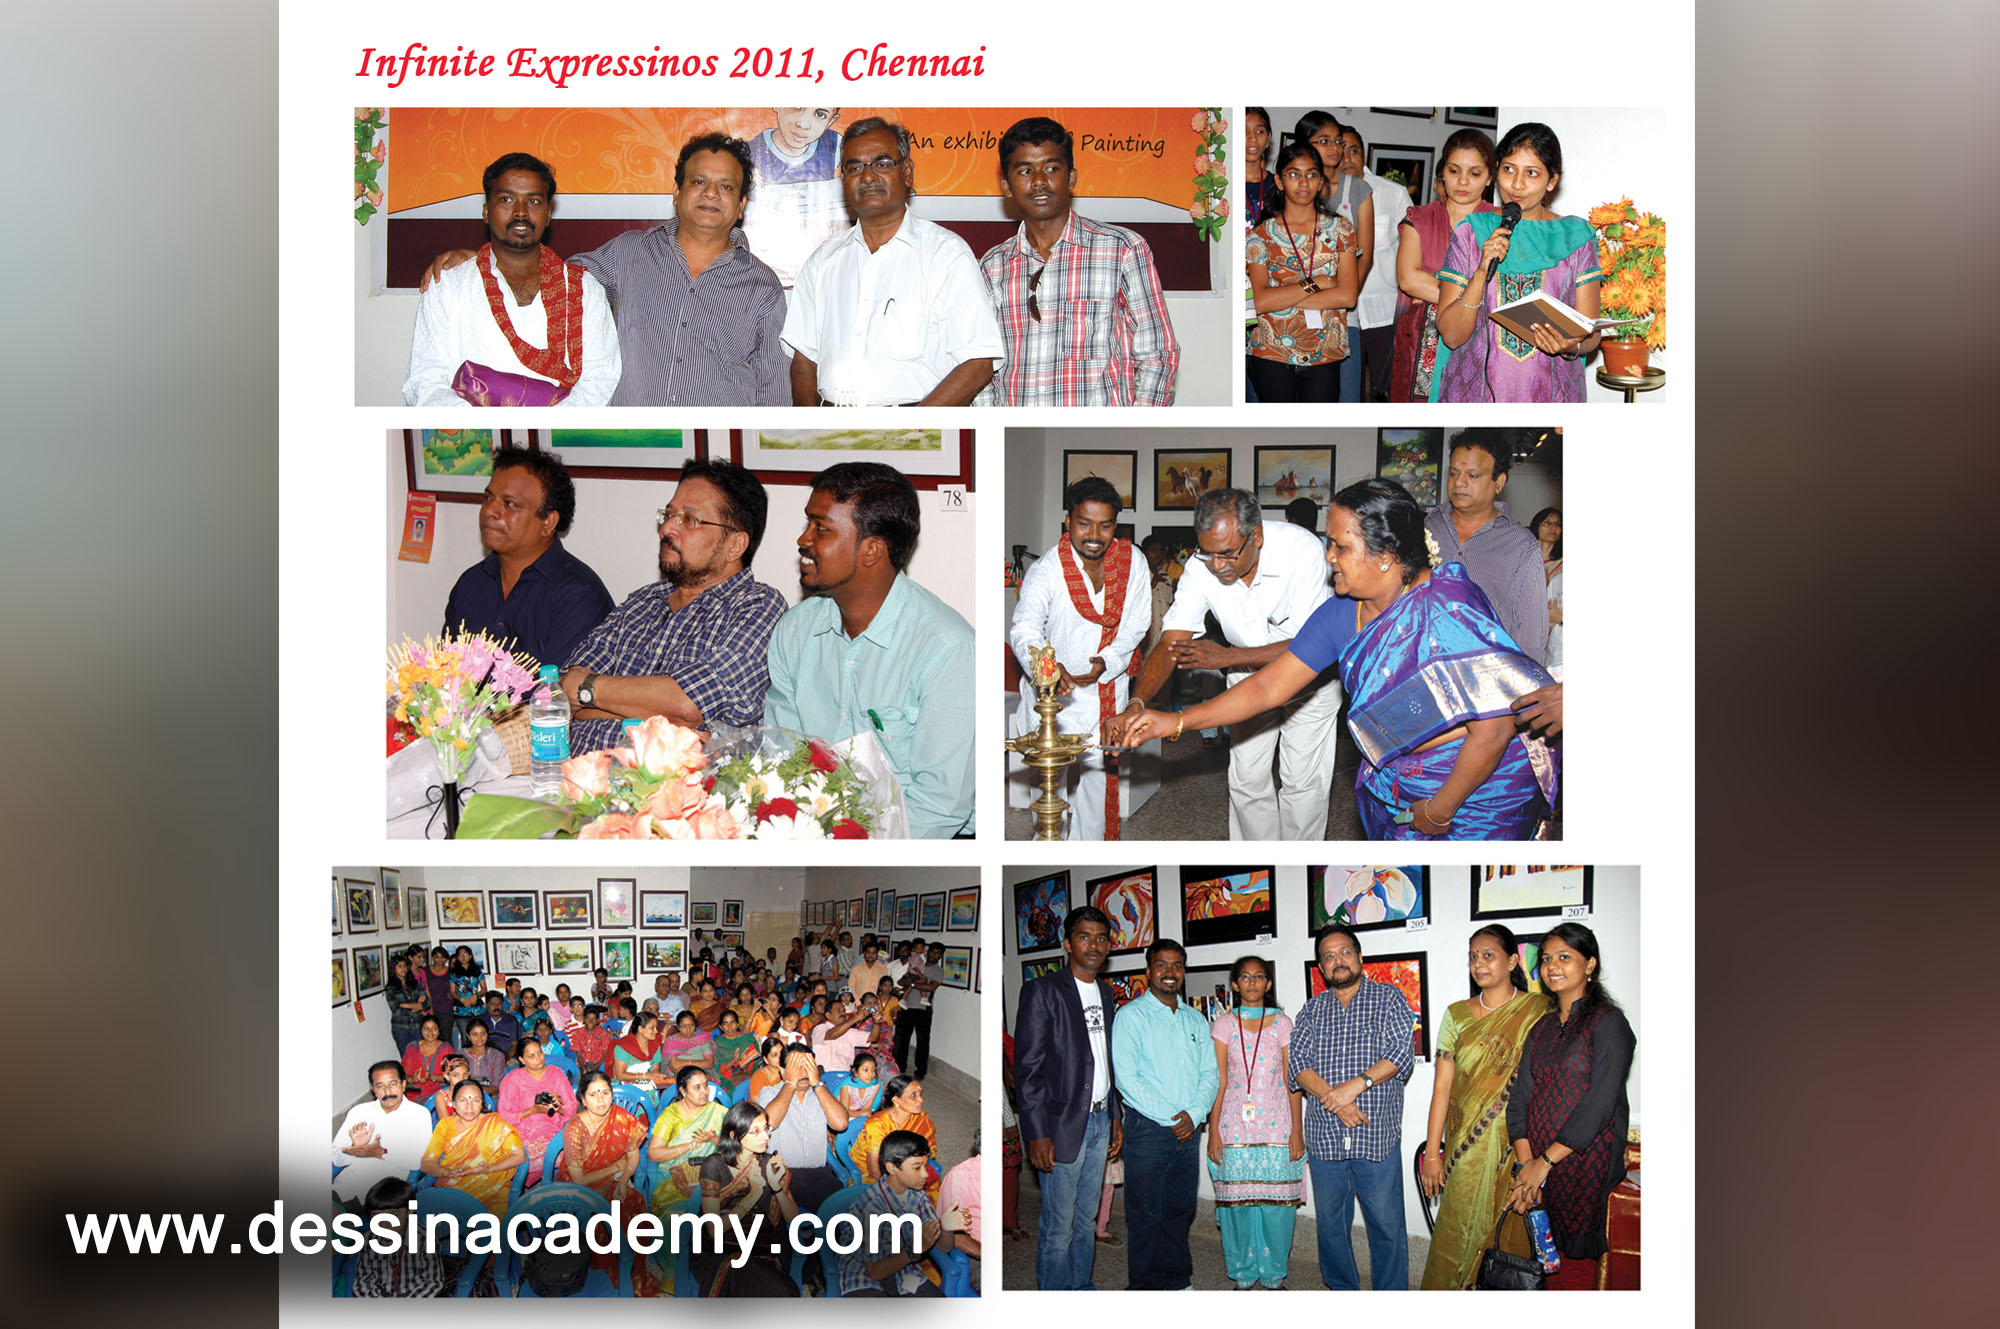 Dessin School of arts Event Gallery 5, Painting classes in KotturpuramDessin School of Arts